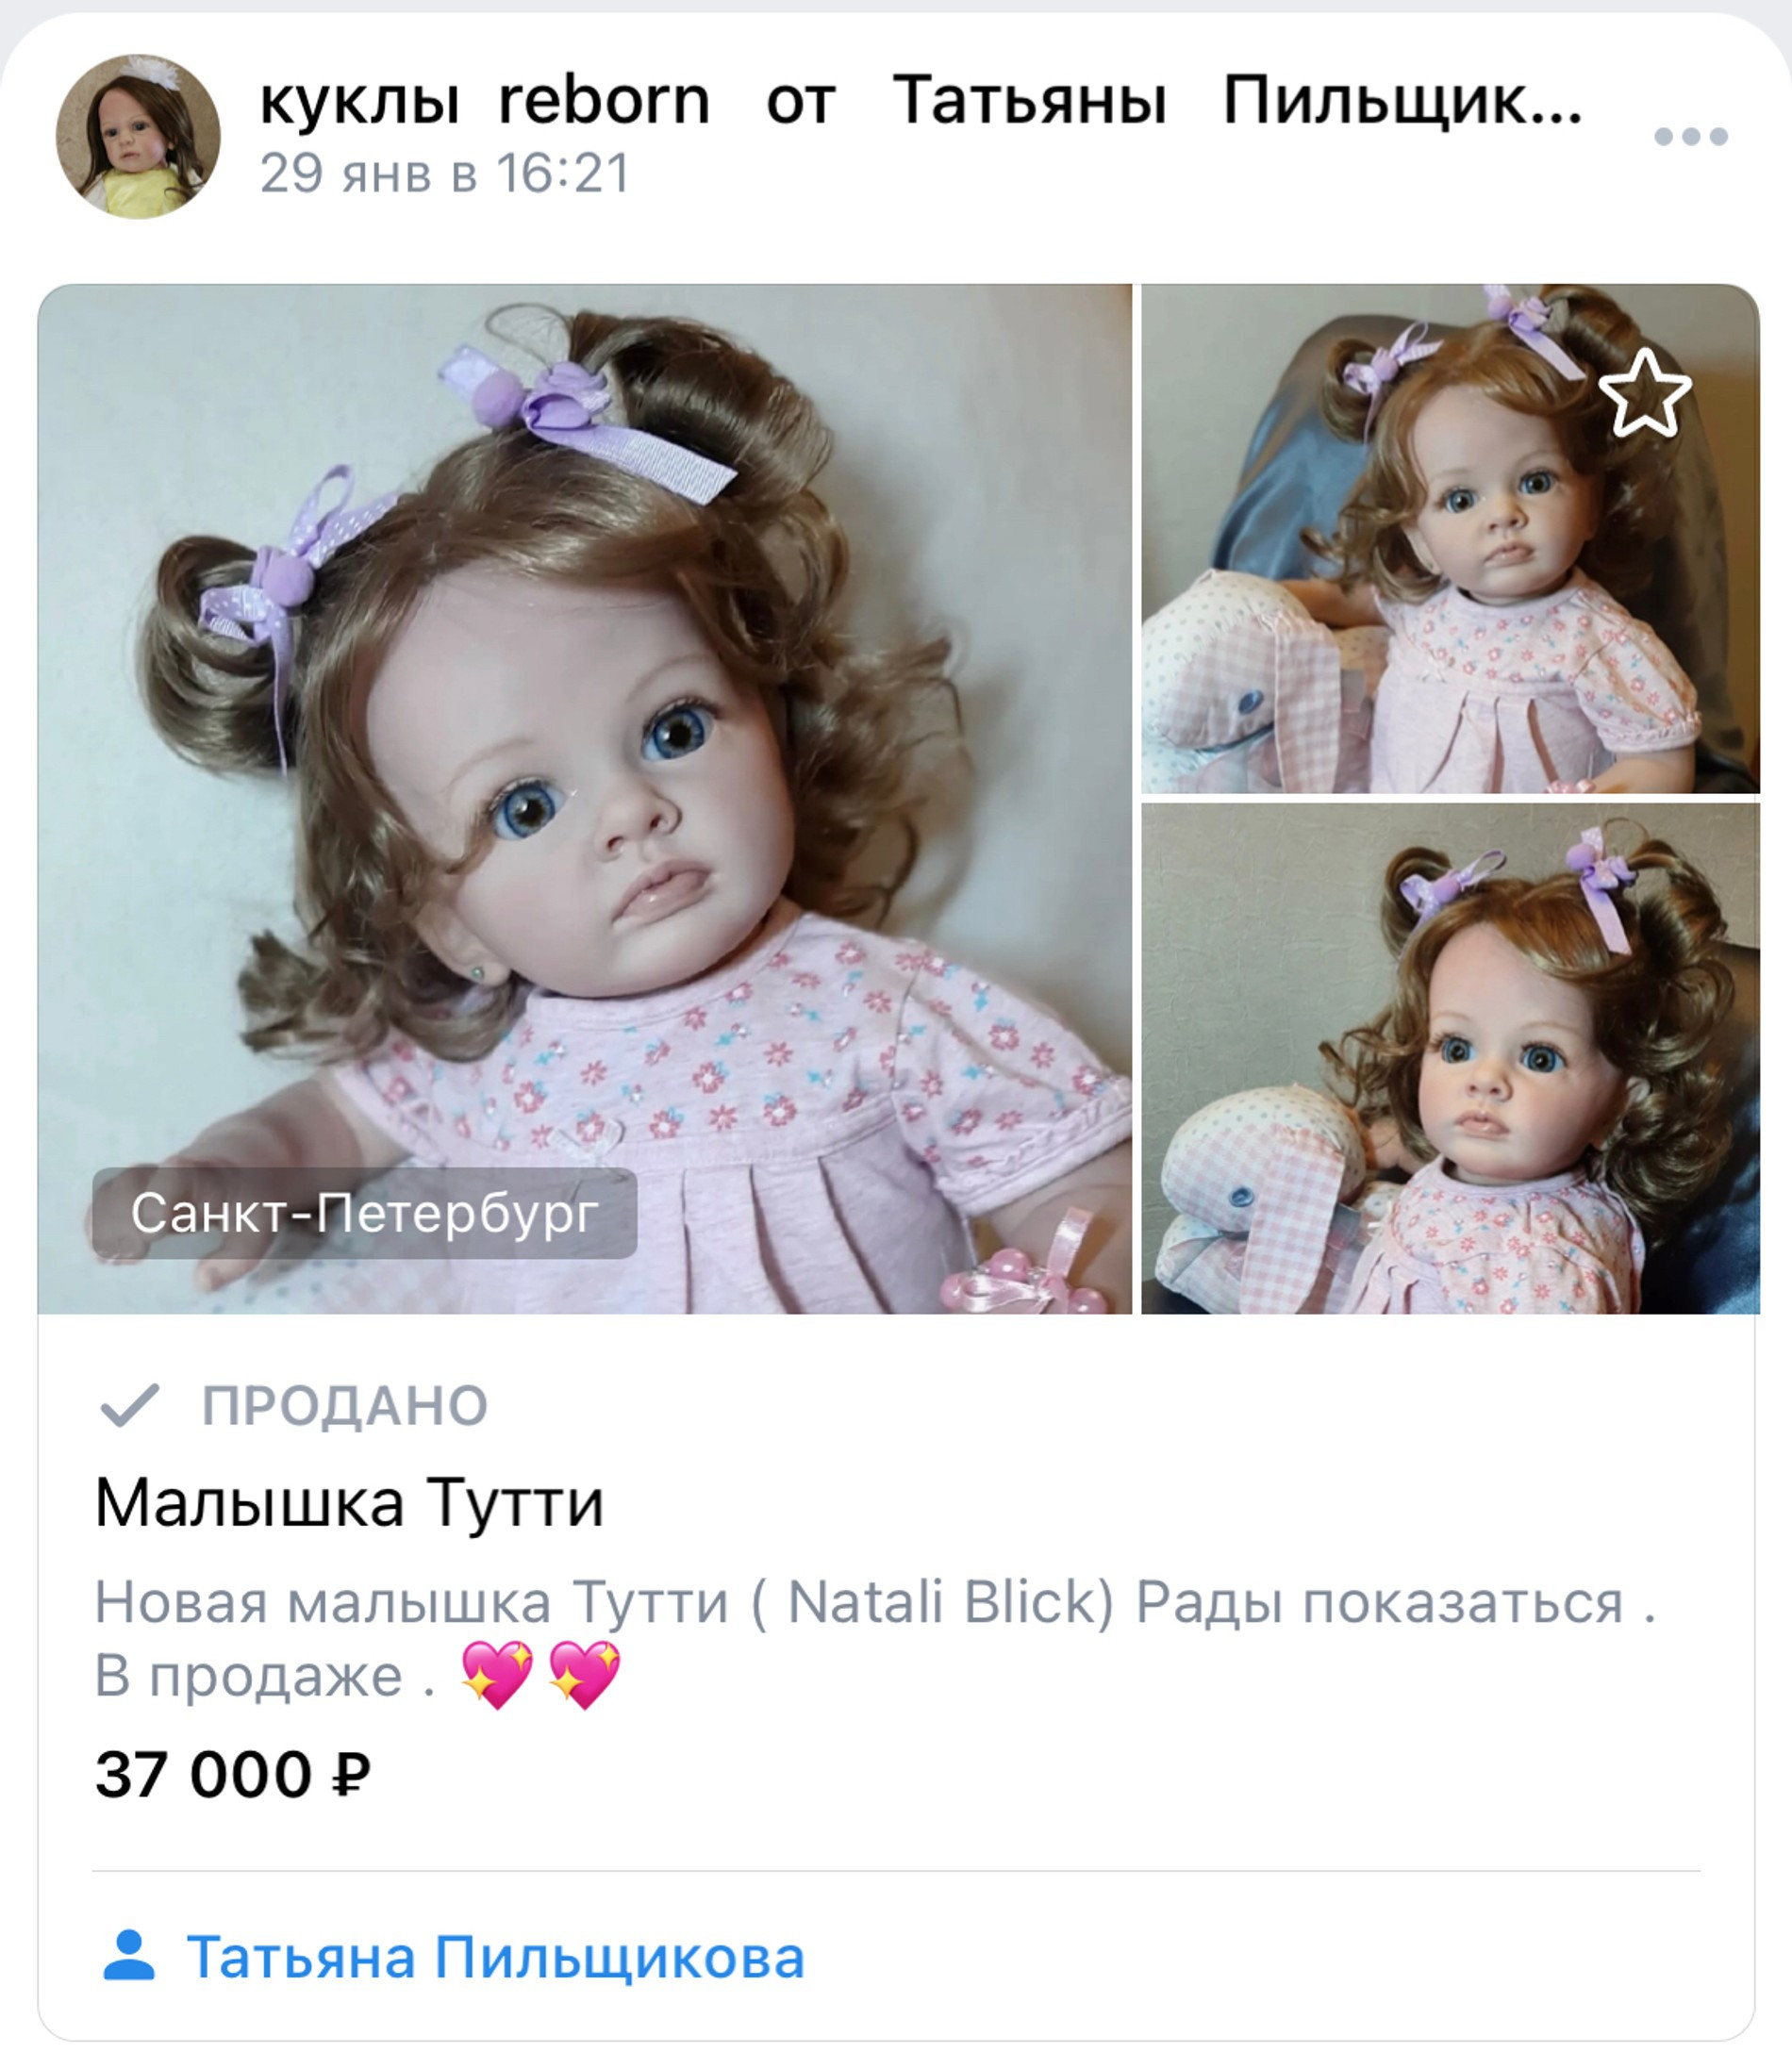 Фото: группа Вконтакте «Куклы reborn от Татьяны Пильщиковой»